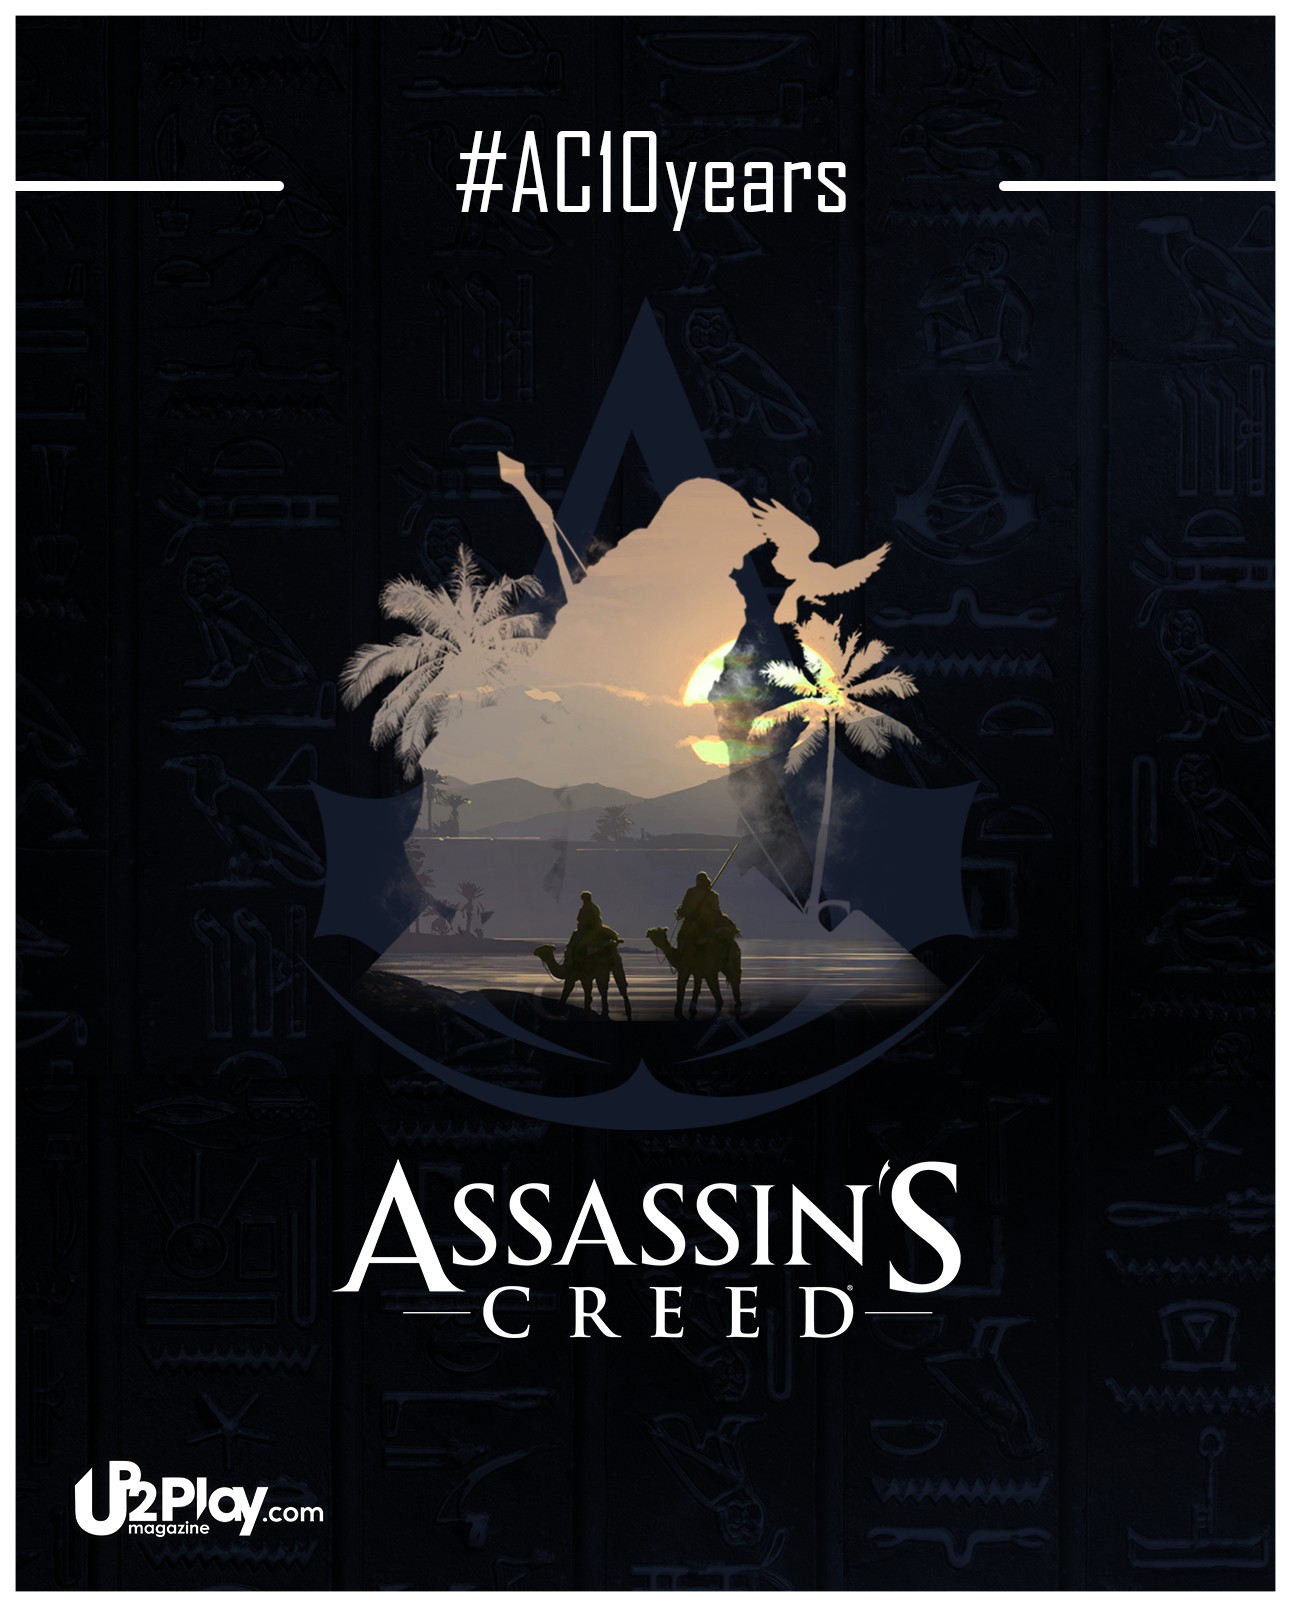 Assassins Creed, Assassins Creed: Brotherhood, Assassin&039;s Creed:  Unity, Assassin&039;s Creed Syndicate, Video games, Ultra  HD, Ubisoft, Ubi30 Wallpaper